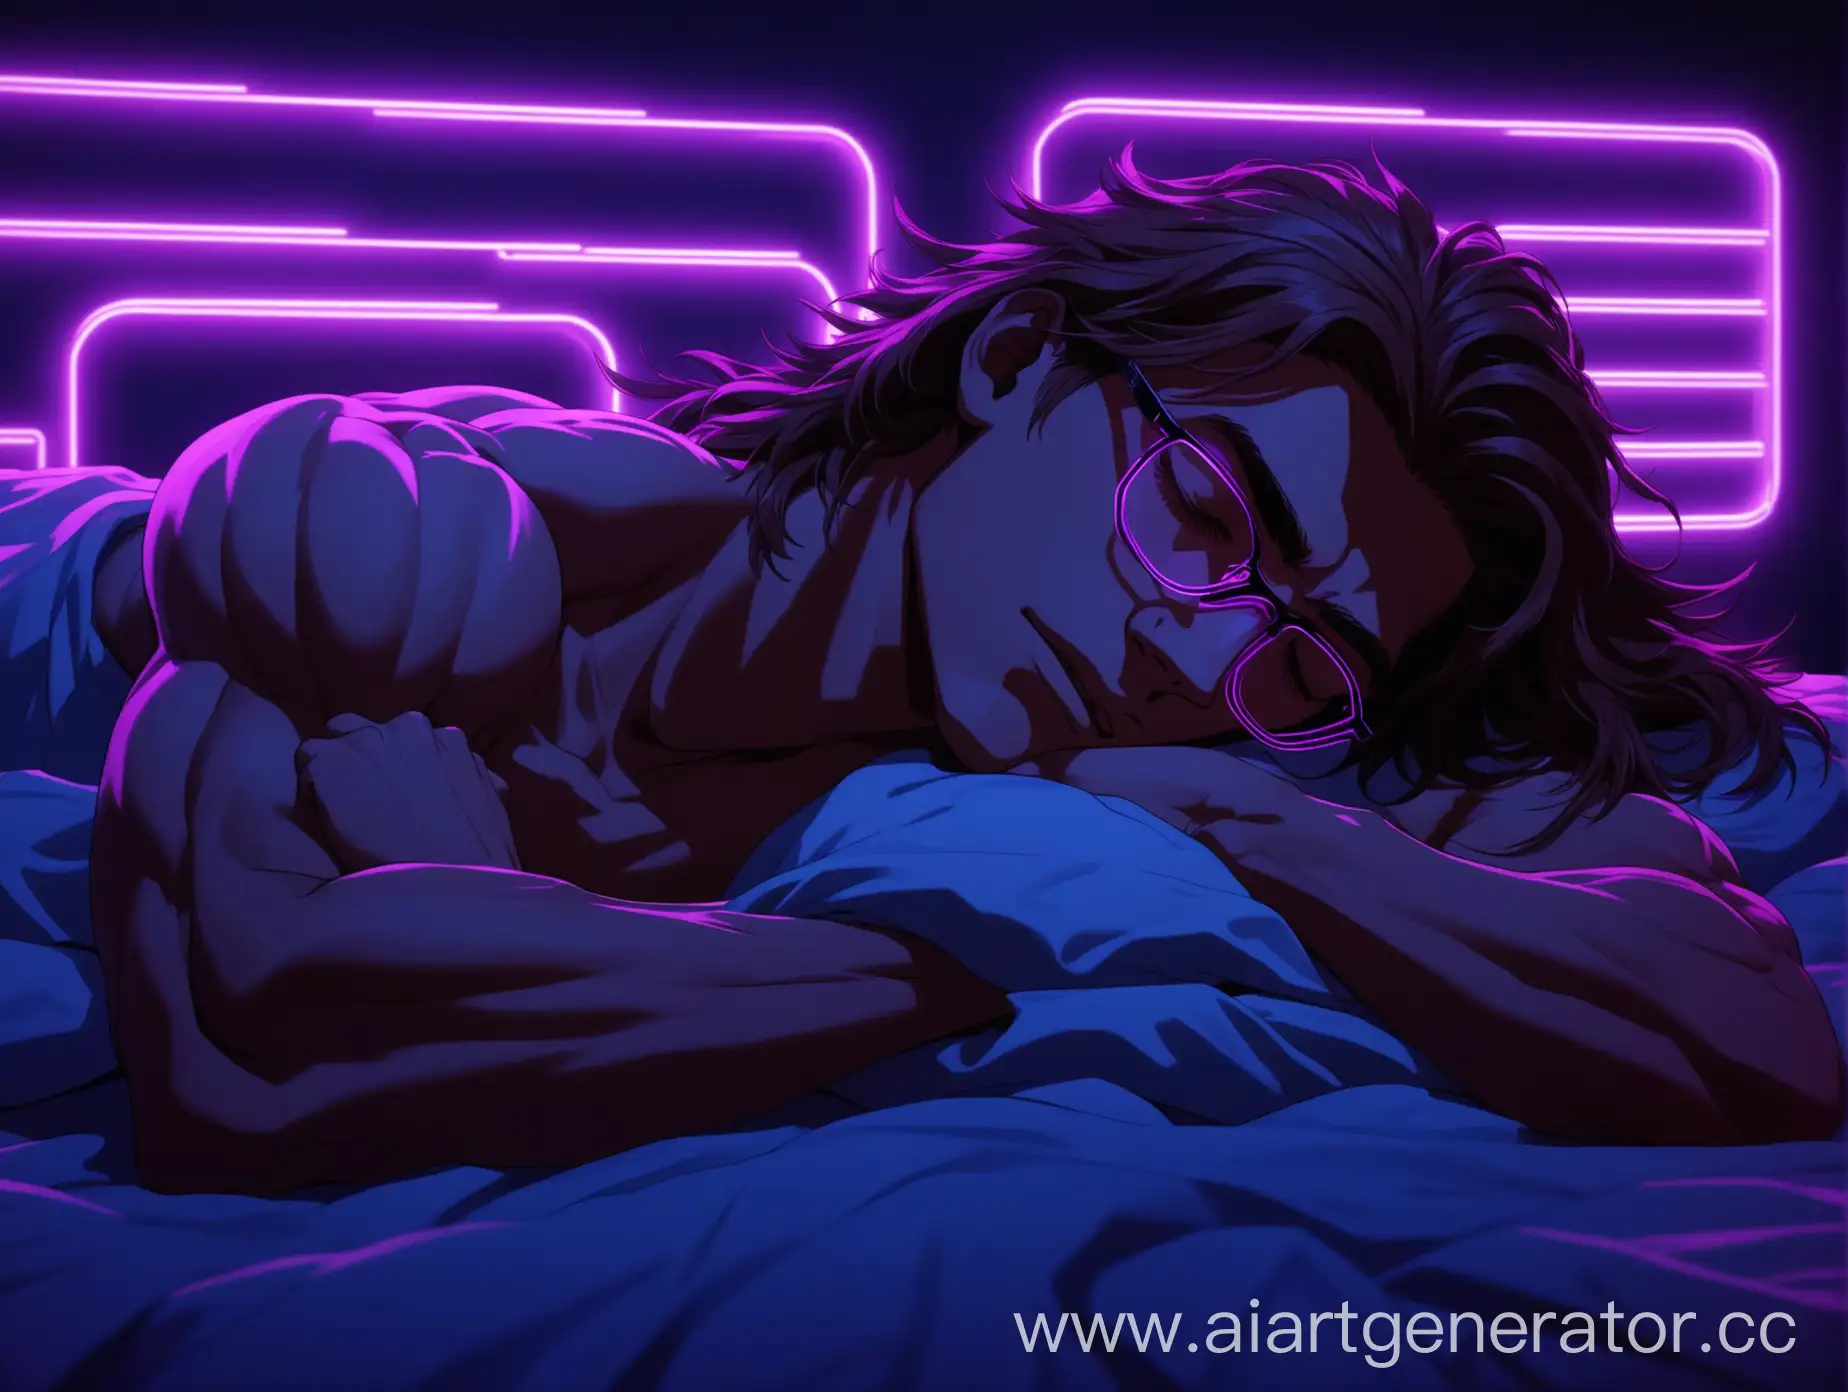 Мускулистый, спортивный парень 18 лет с длинными каштановыми волосами и в очках, лежит на кровати, в тёмной комнате с фиолетовыми неонами, спит